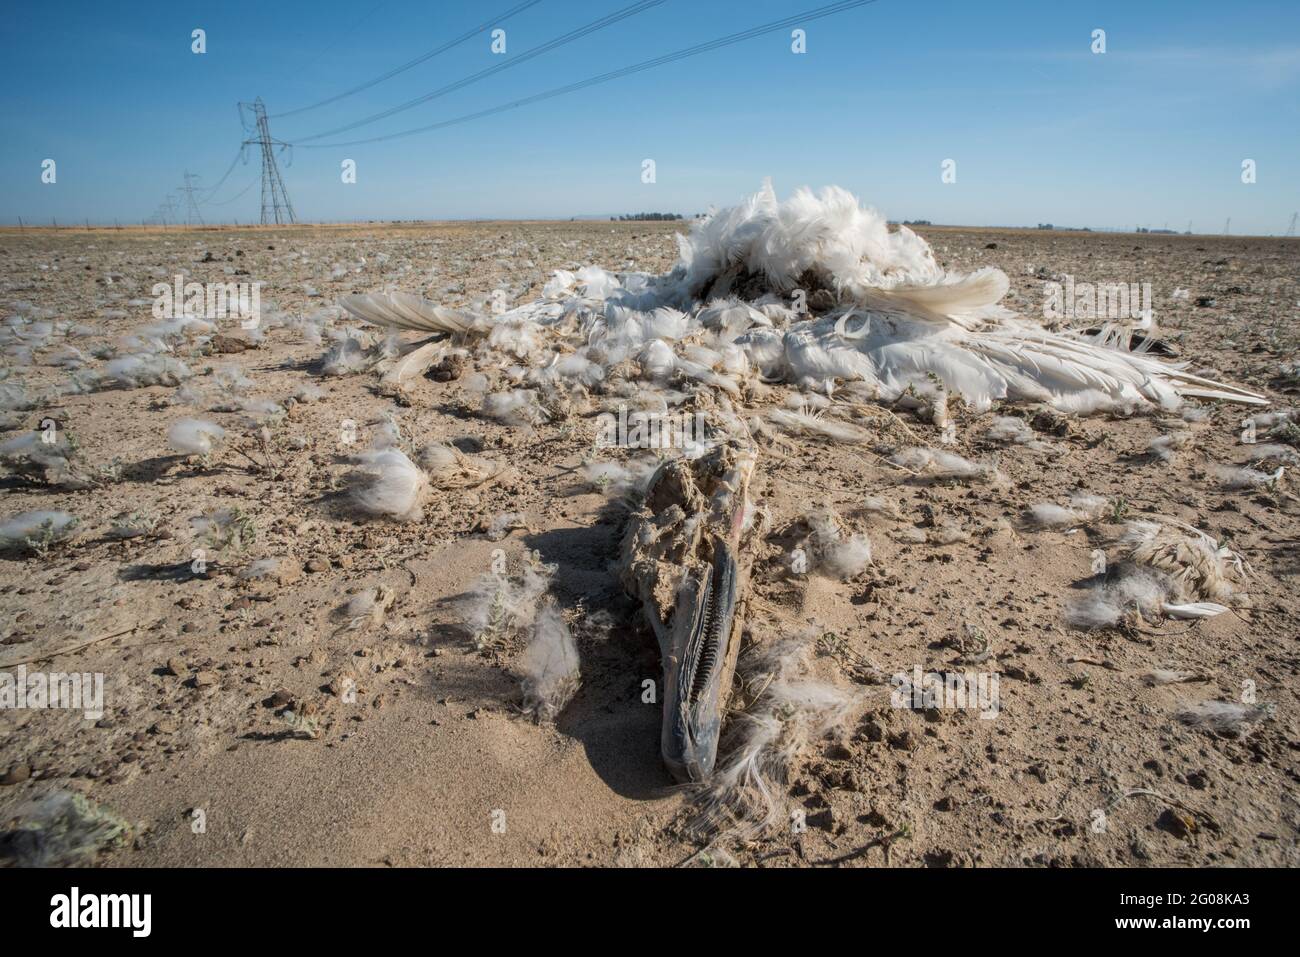 Un cigno morto di tundra (Cygnus columbianus) in California, uno dei milioni di uccelli uccisi a causa di una collisione con le linee elettriche. Foto Stock